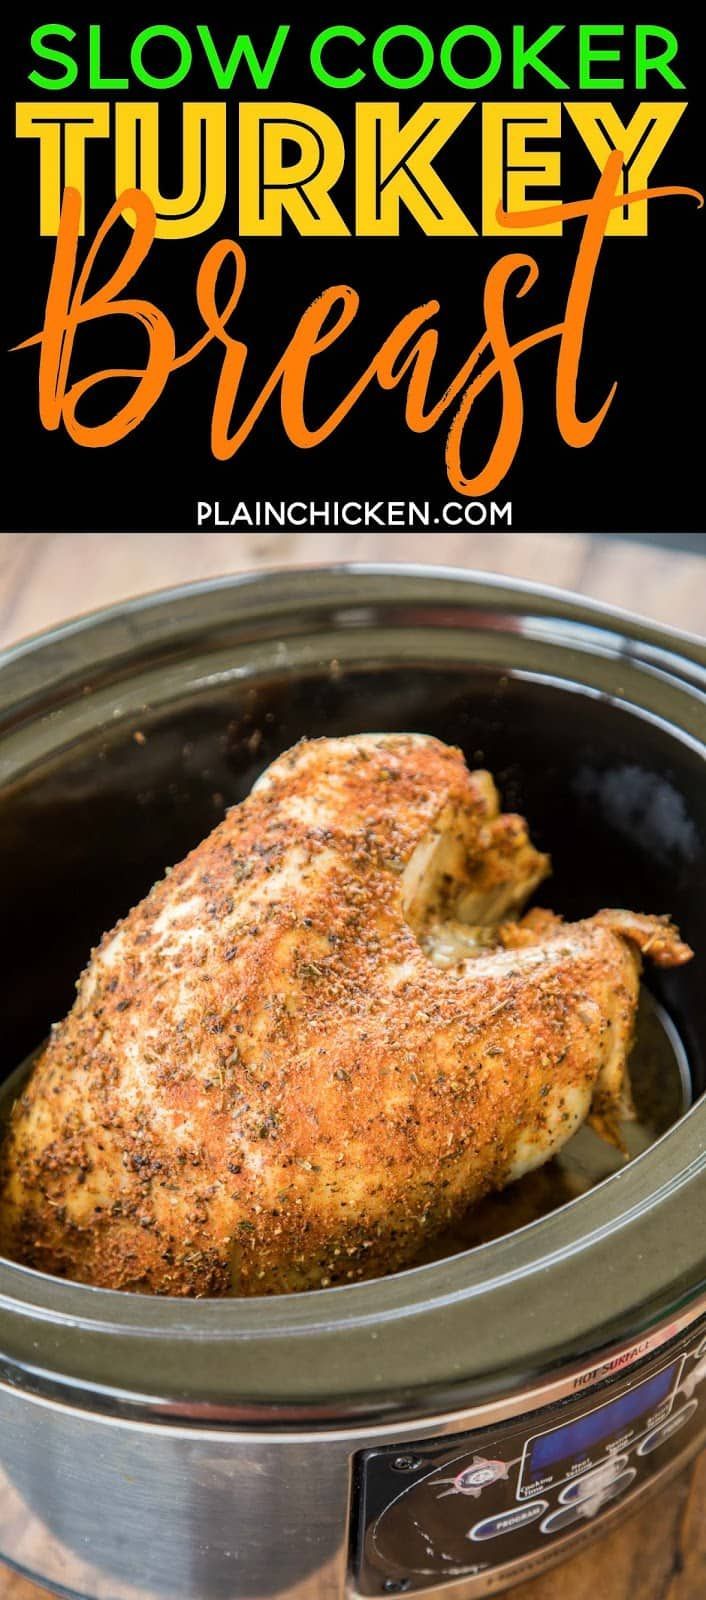 Slow Cooker Turkey Breast - Plain Chicken -   19 turkey breast recipes crock pot ideas